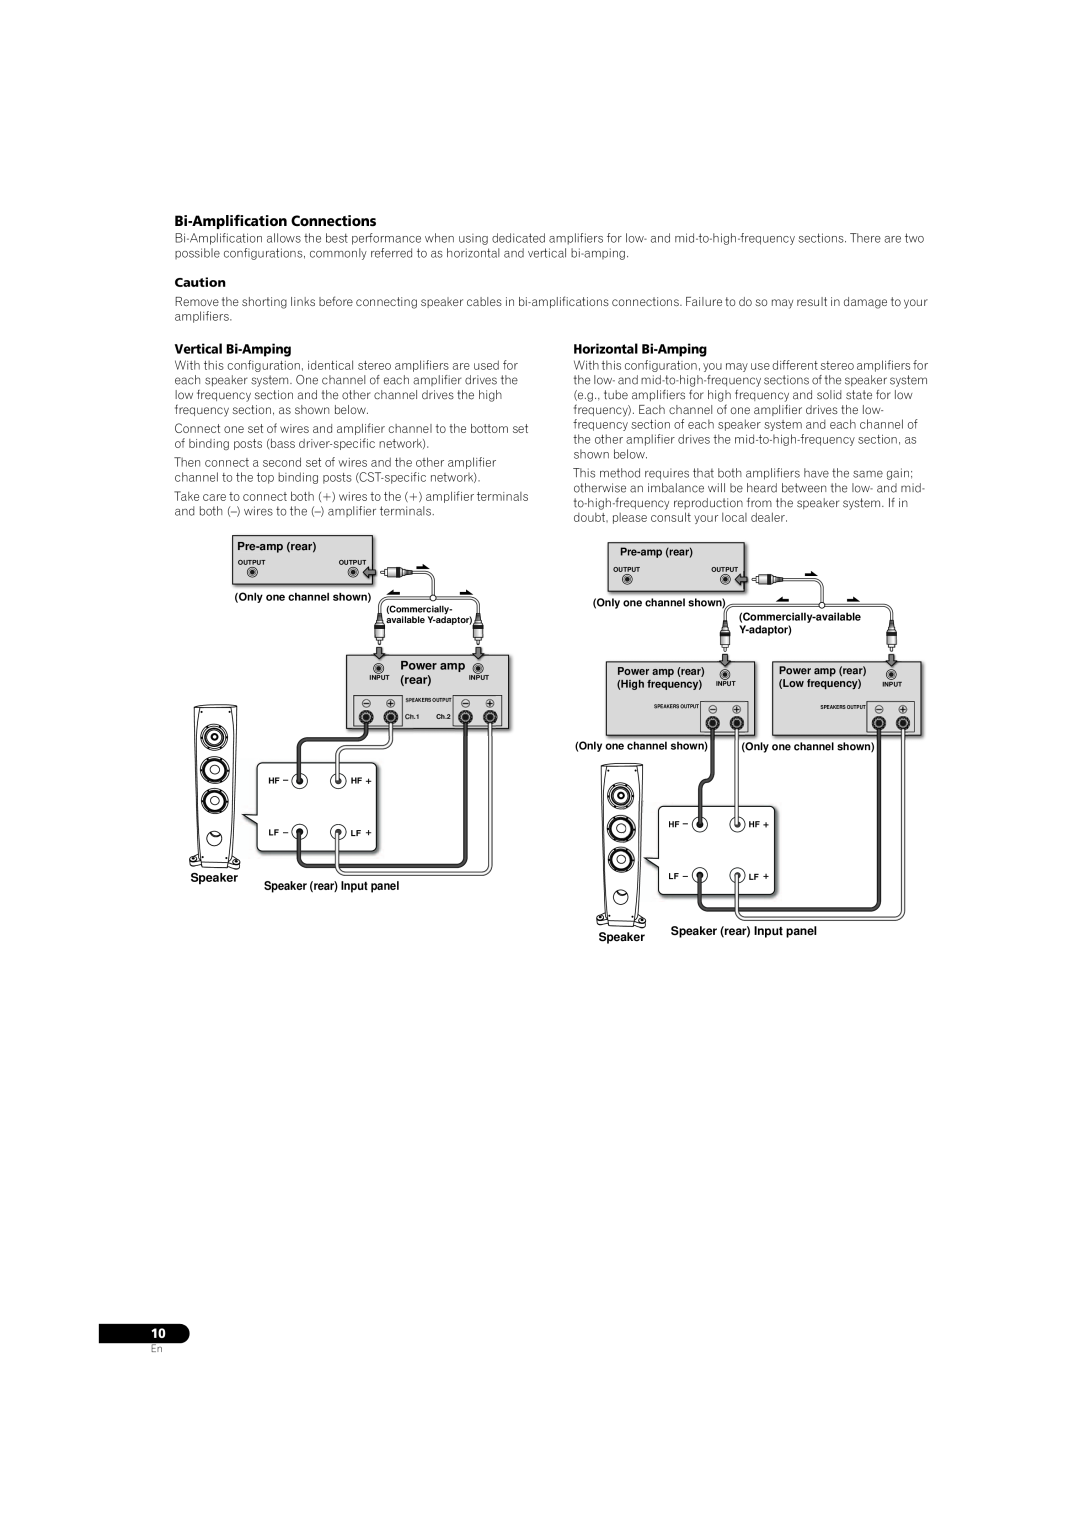 Pioneer S-3EX manual Bi-AmplificationConnections, Vertical Bi-Amping, Horizontal Bi-Amping, Speaker, Power amp 